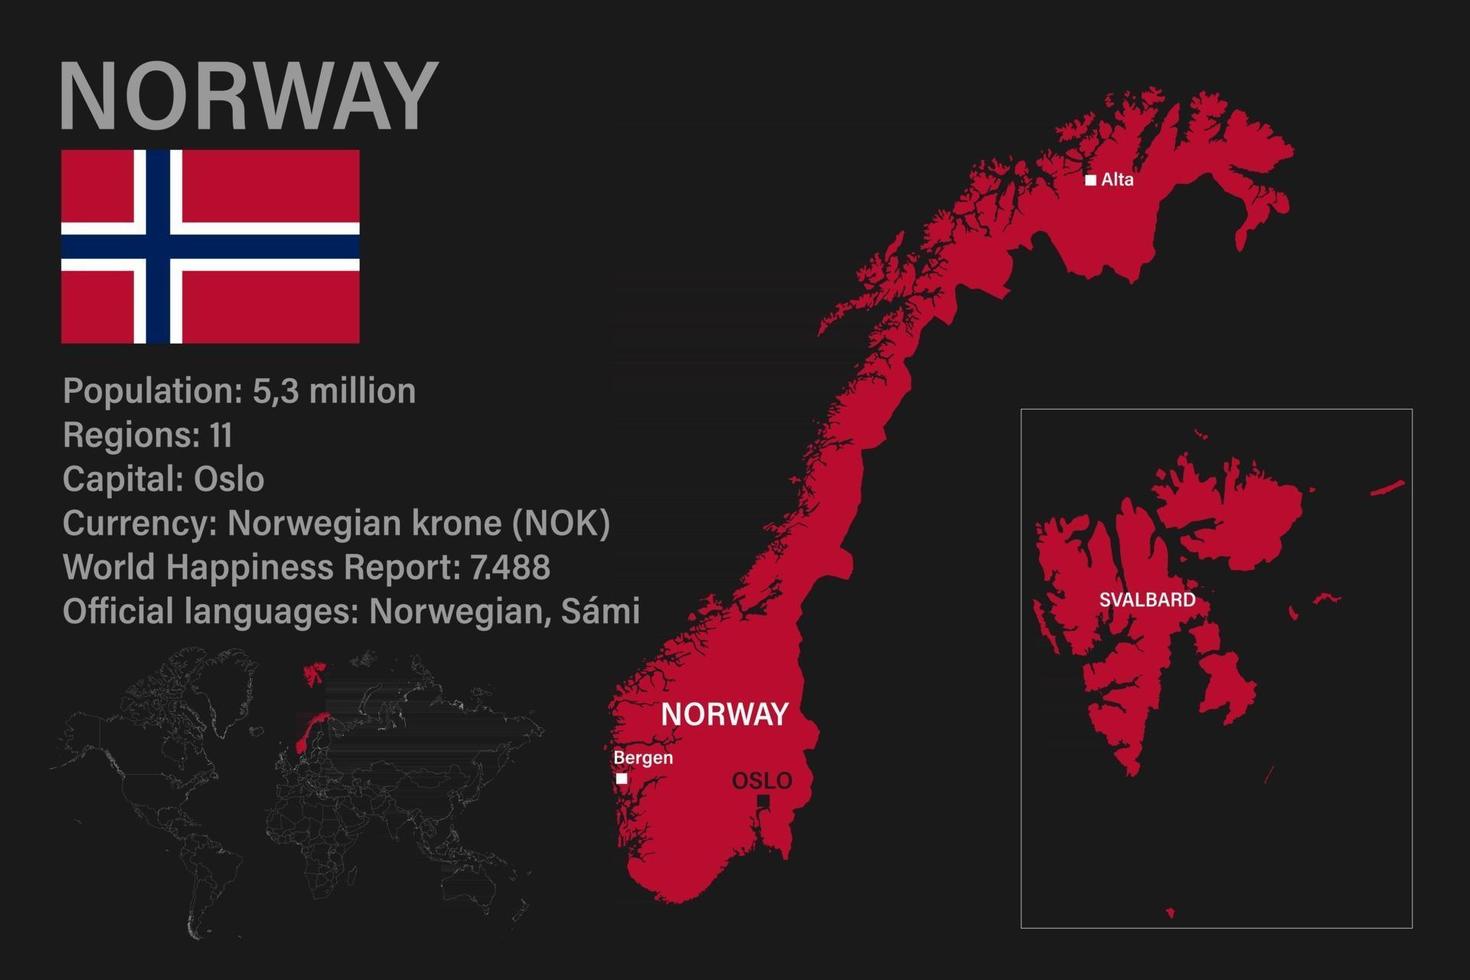 hochdetaillierte Norwegenkarte mit Flagge, Hauptstadt und kleiner Weltkarte vektor